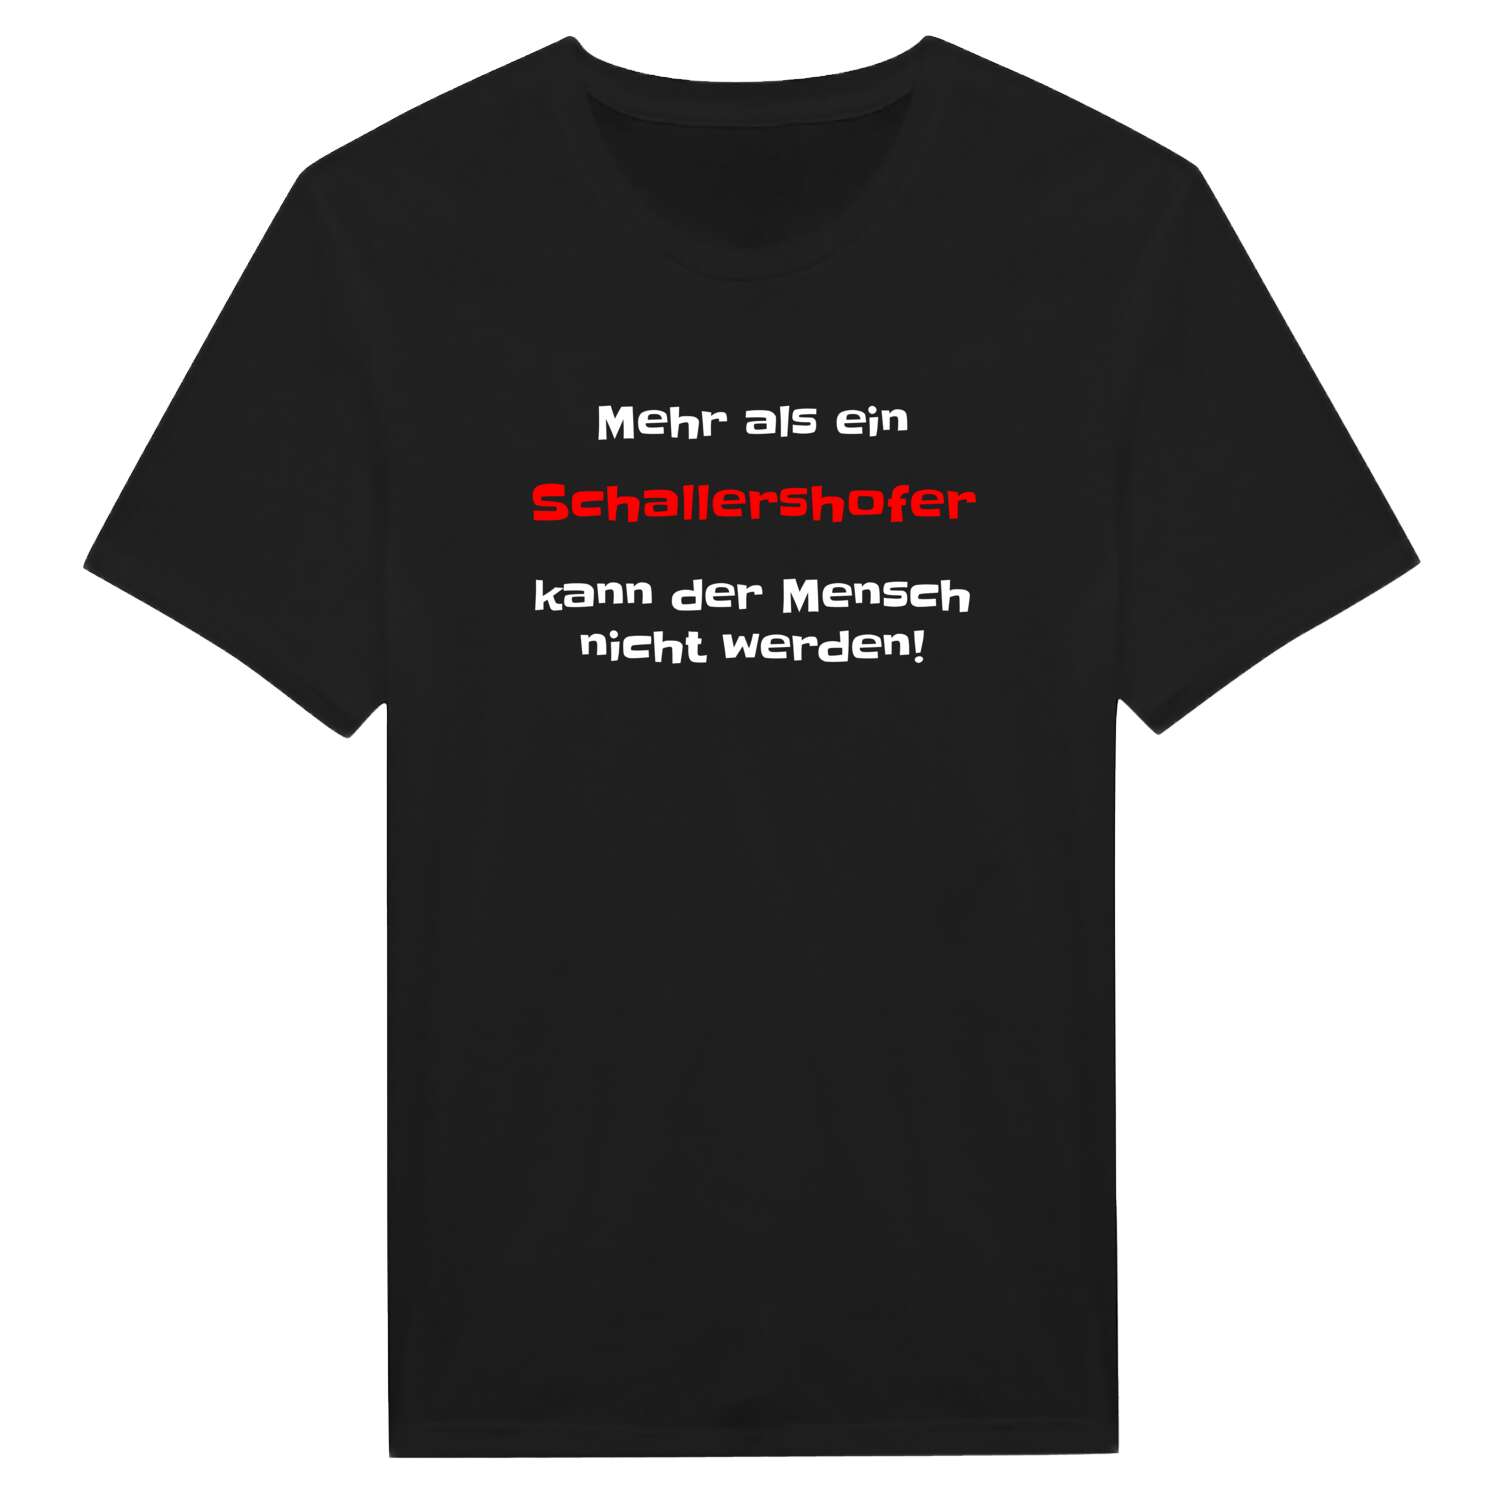 Schallershof T-Shirt »Mehr als ein«